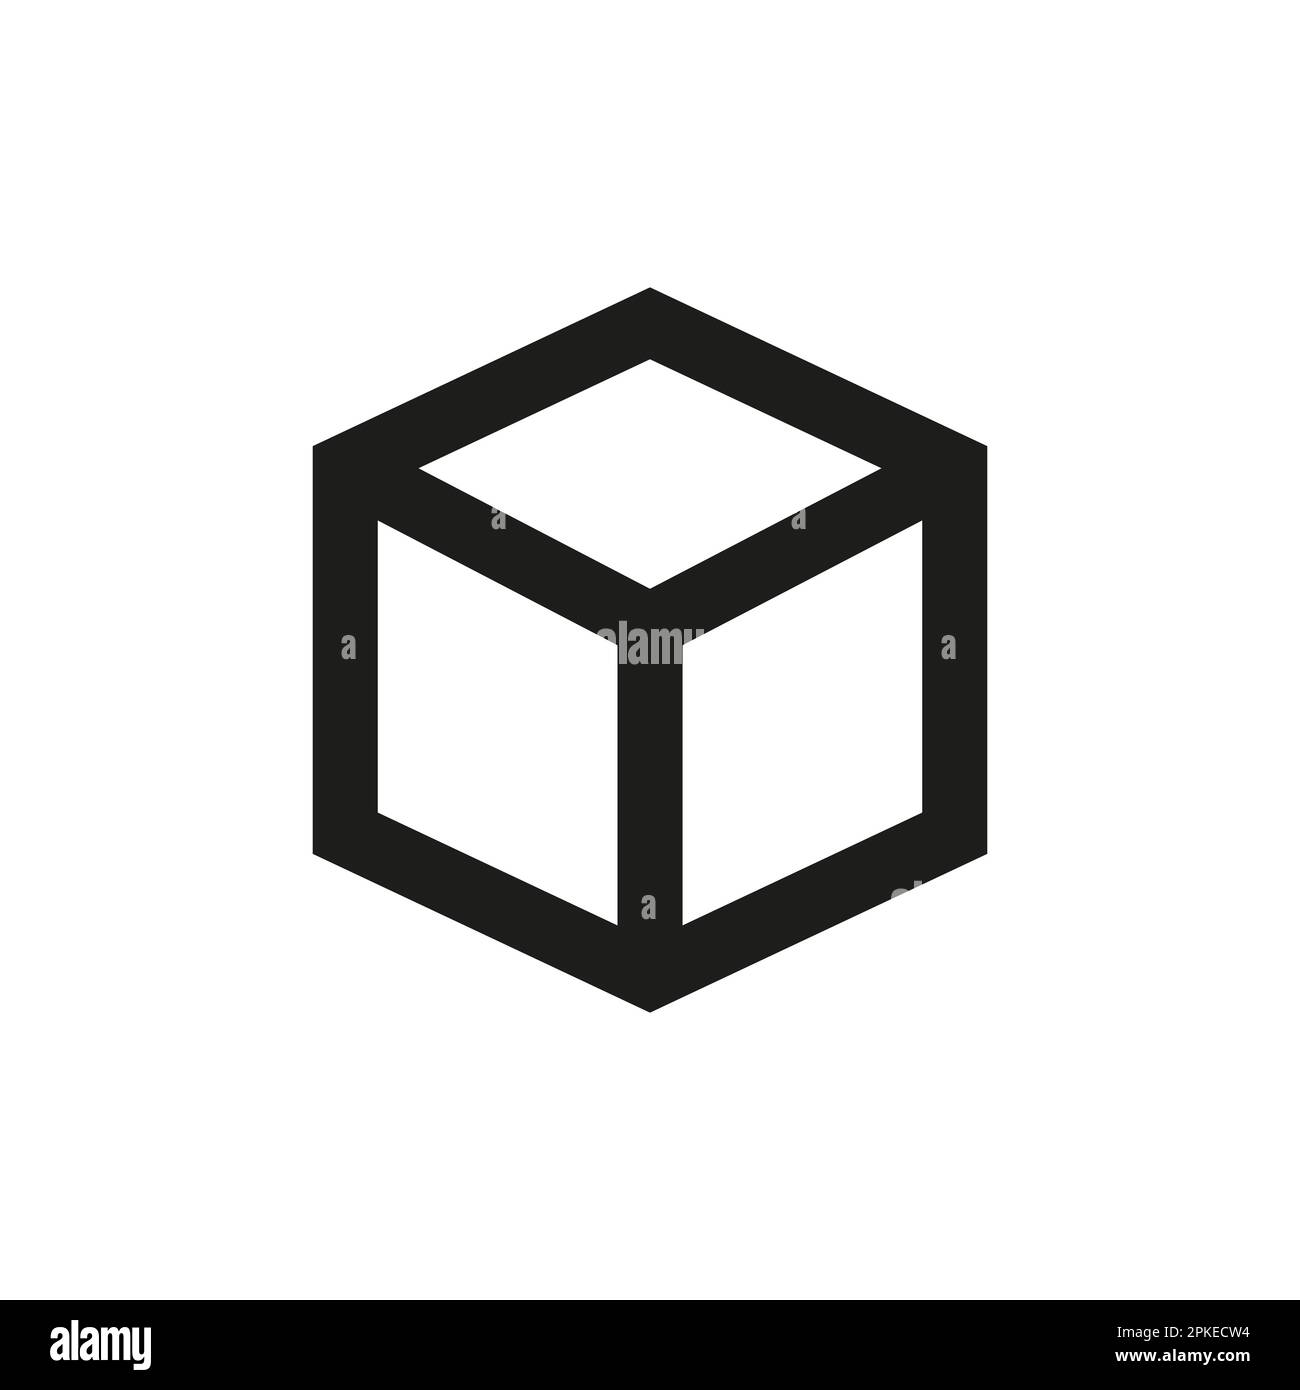 Dibujar Un Cubo En 3d Cubo en 3d para dibujar Imágenes recortadas de stock - Alamy